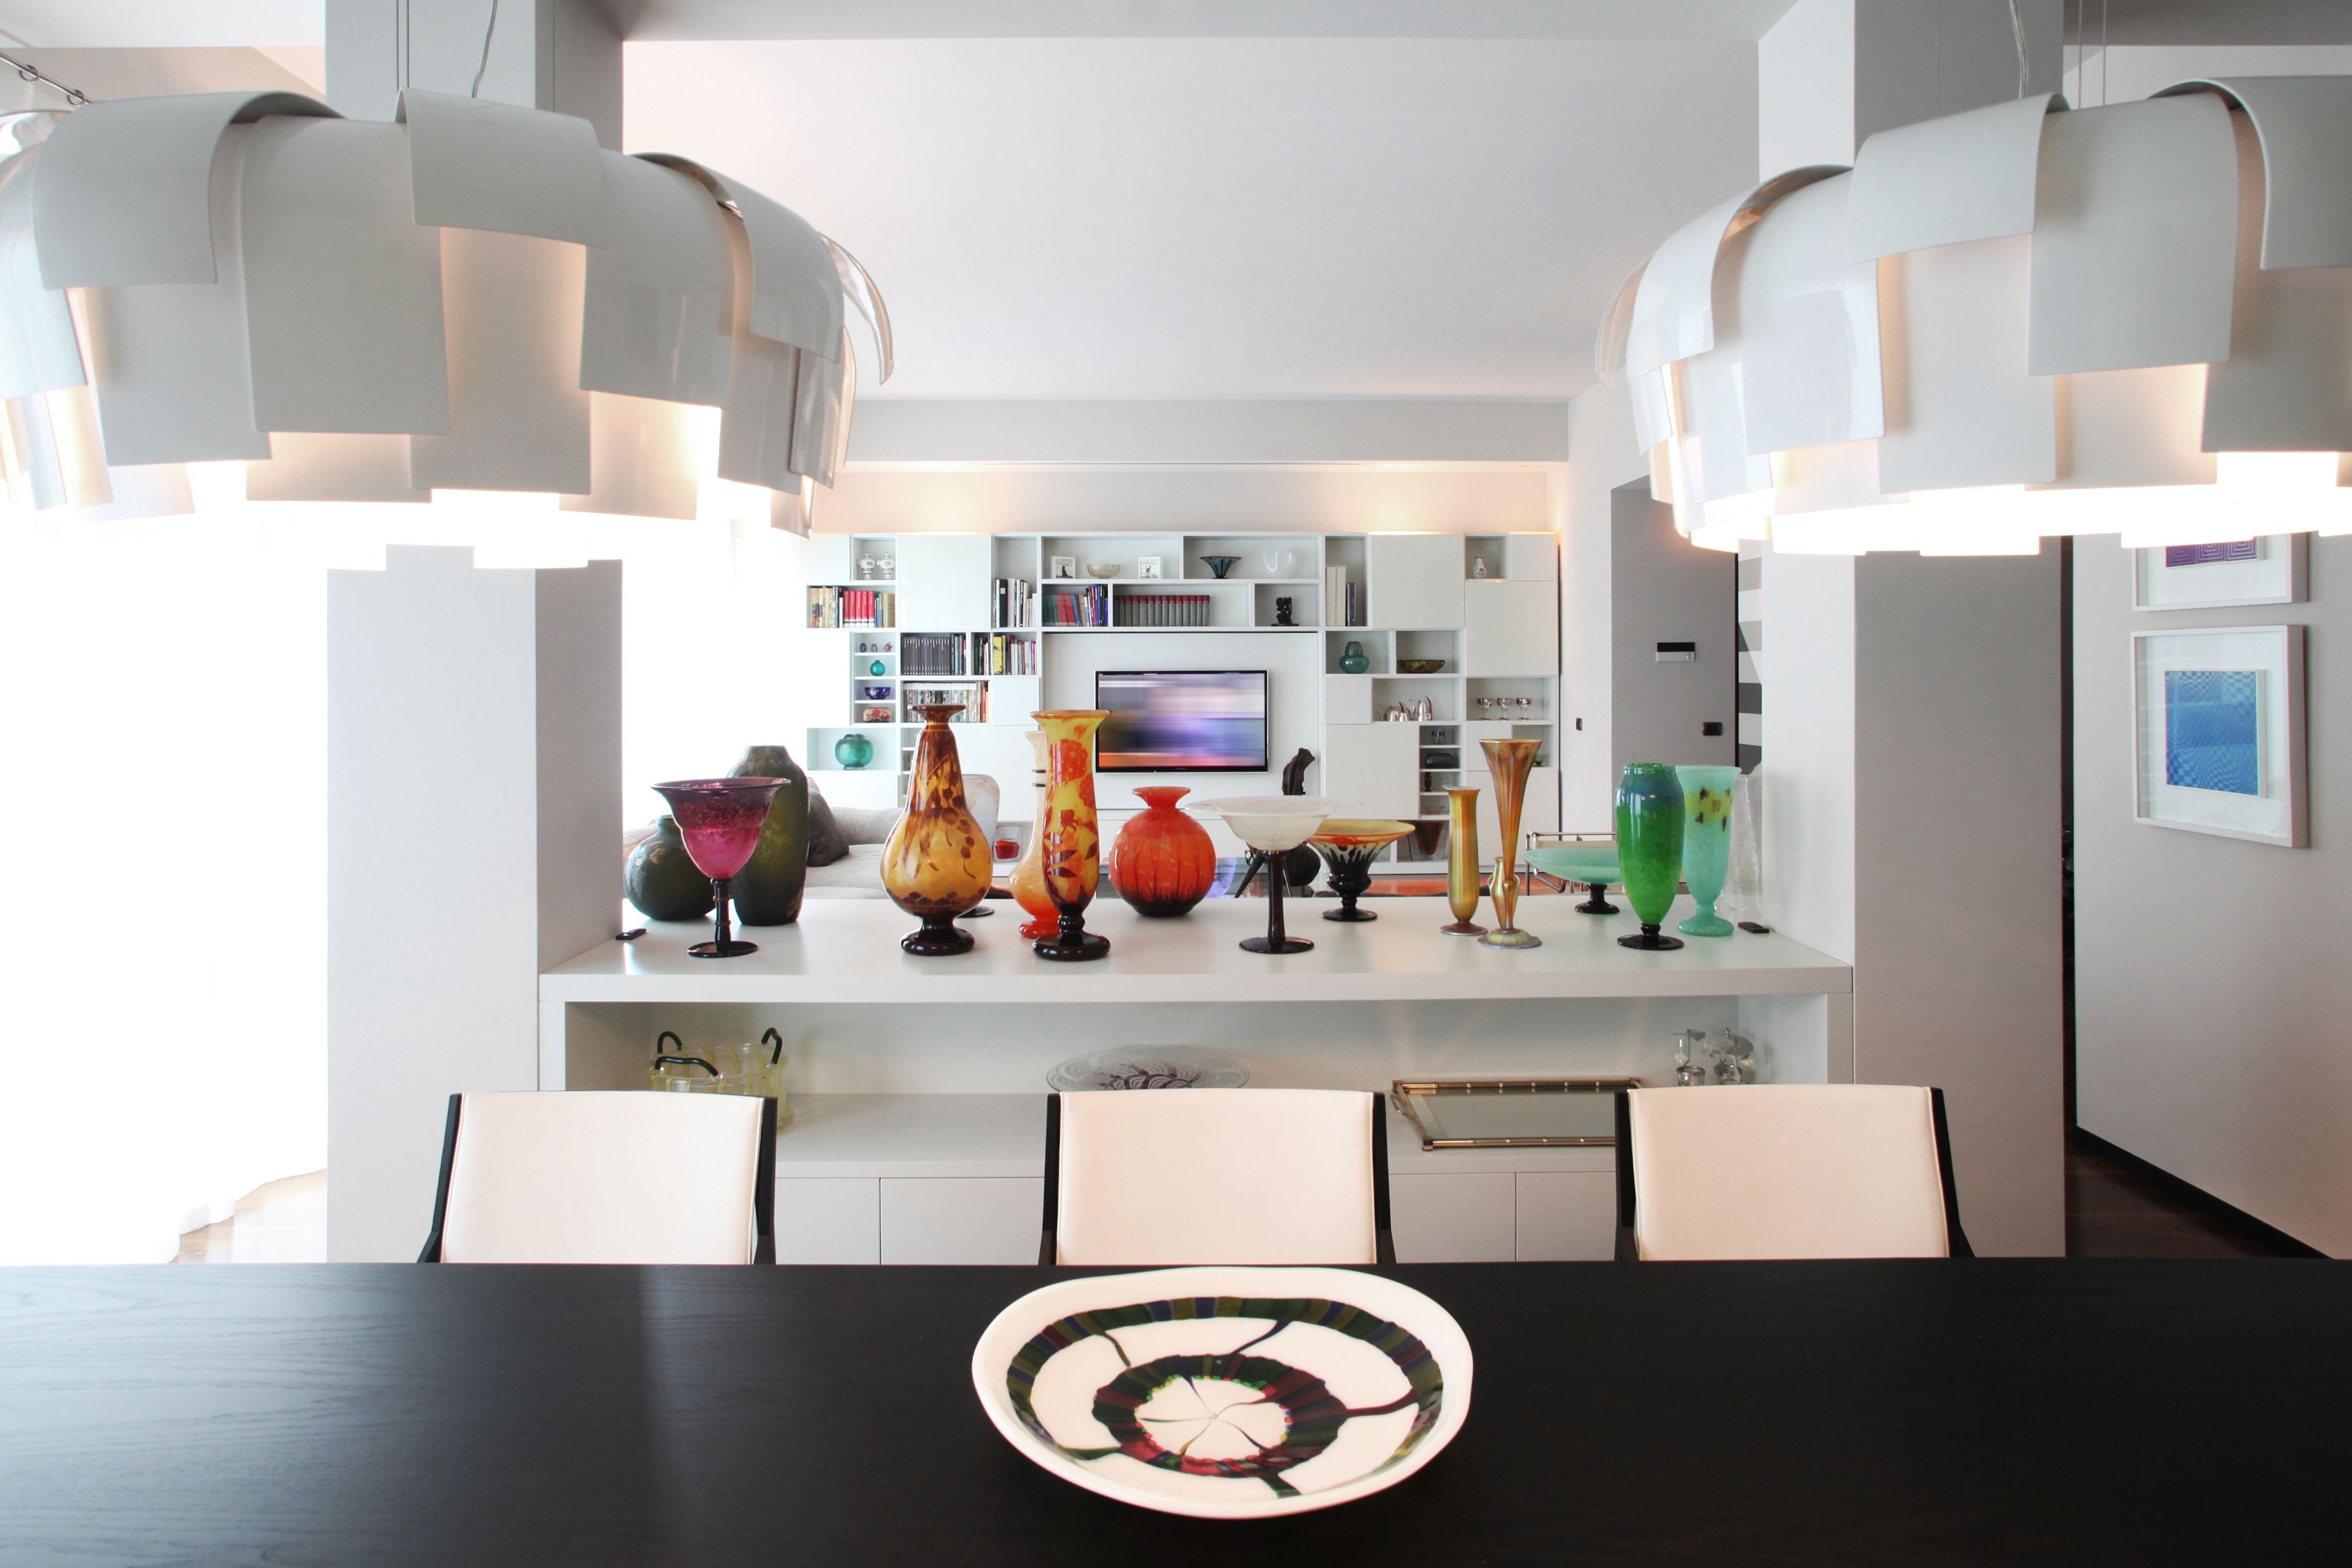 Appartamento a Brera, Milano, Progetto di interni, 180mq

Cliente privato, 2015-2016